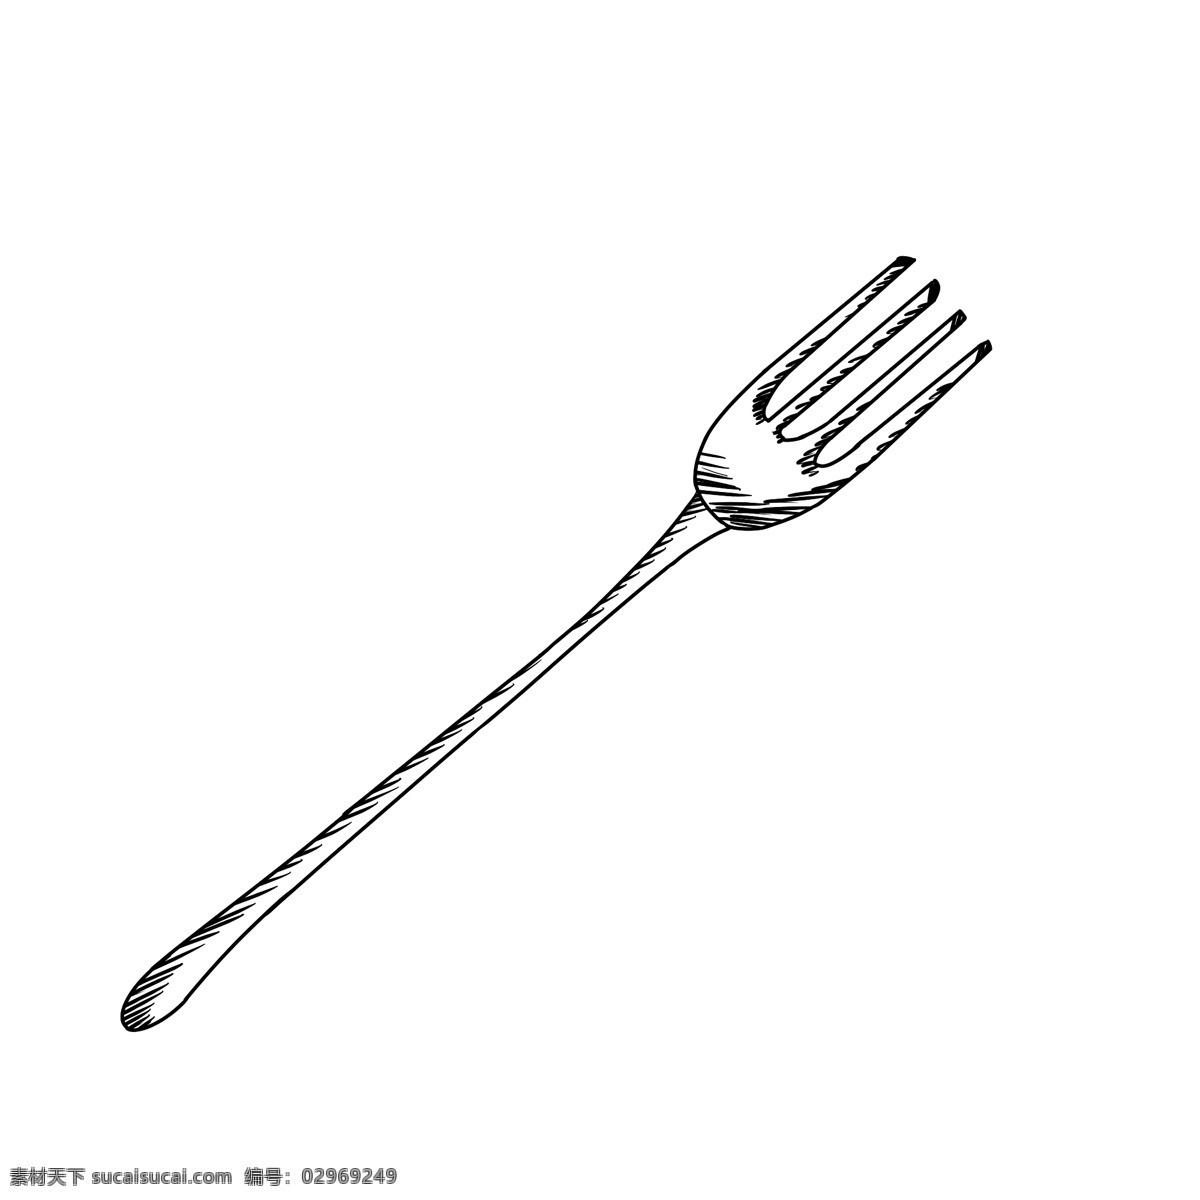 黑白 简约 手绘 风格 叉子 黑色 手绘风格 线条 金属叉子 餐具 西餐 餐厅 简约风格 日常用品 美食 食物